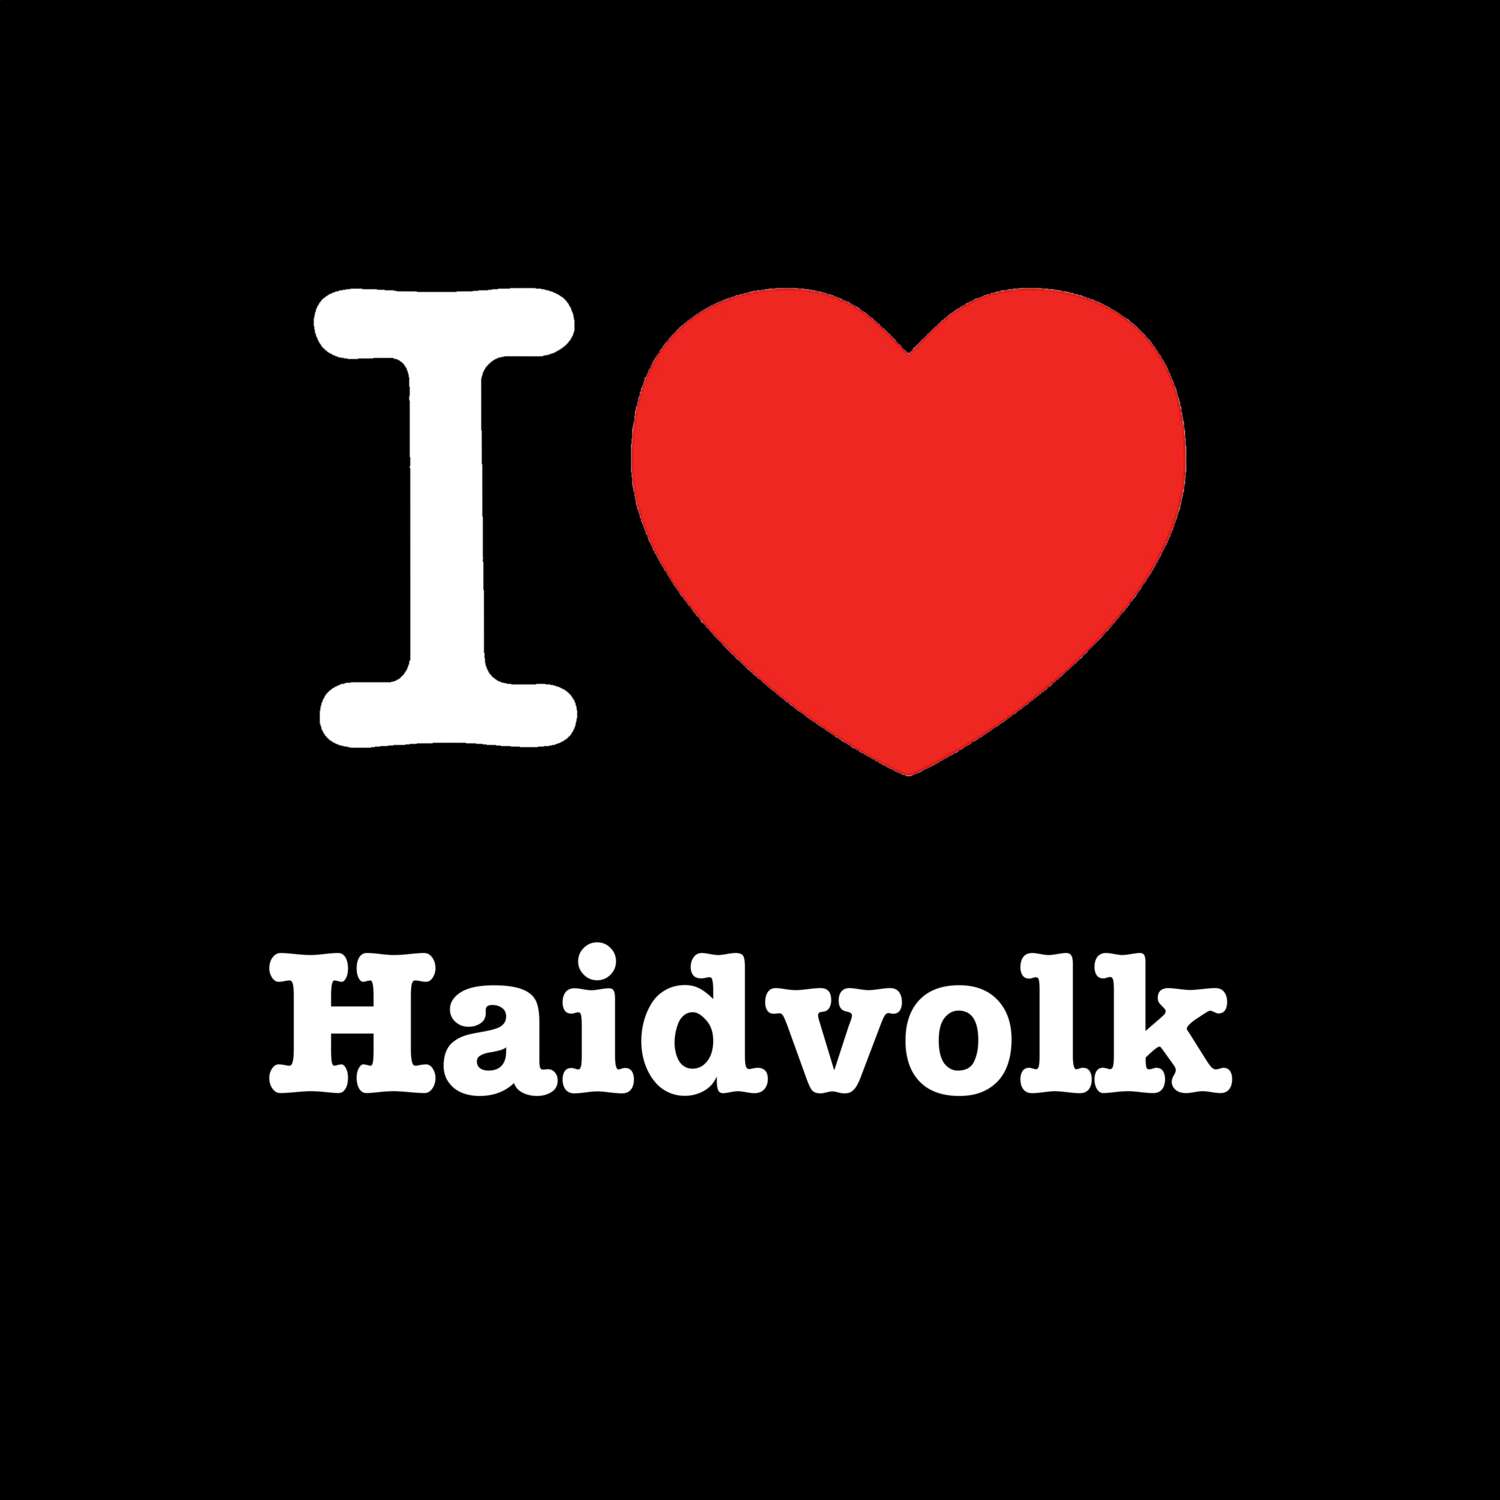 Haidvolk T-Shirt »I love«